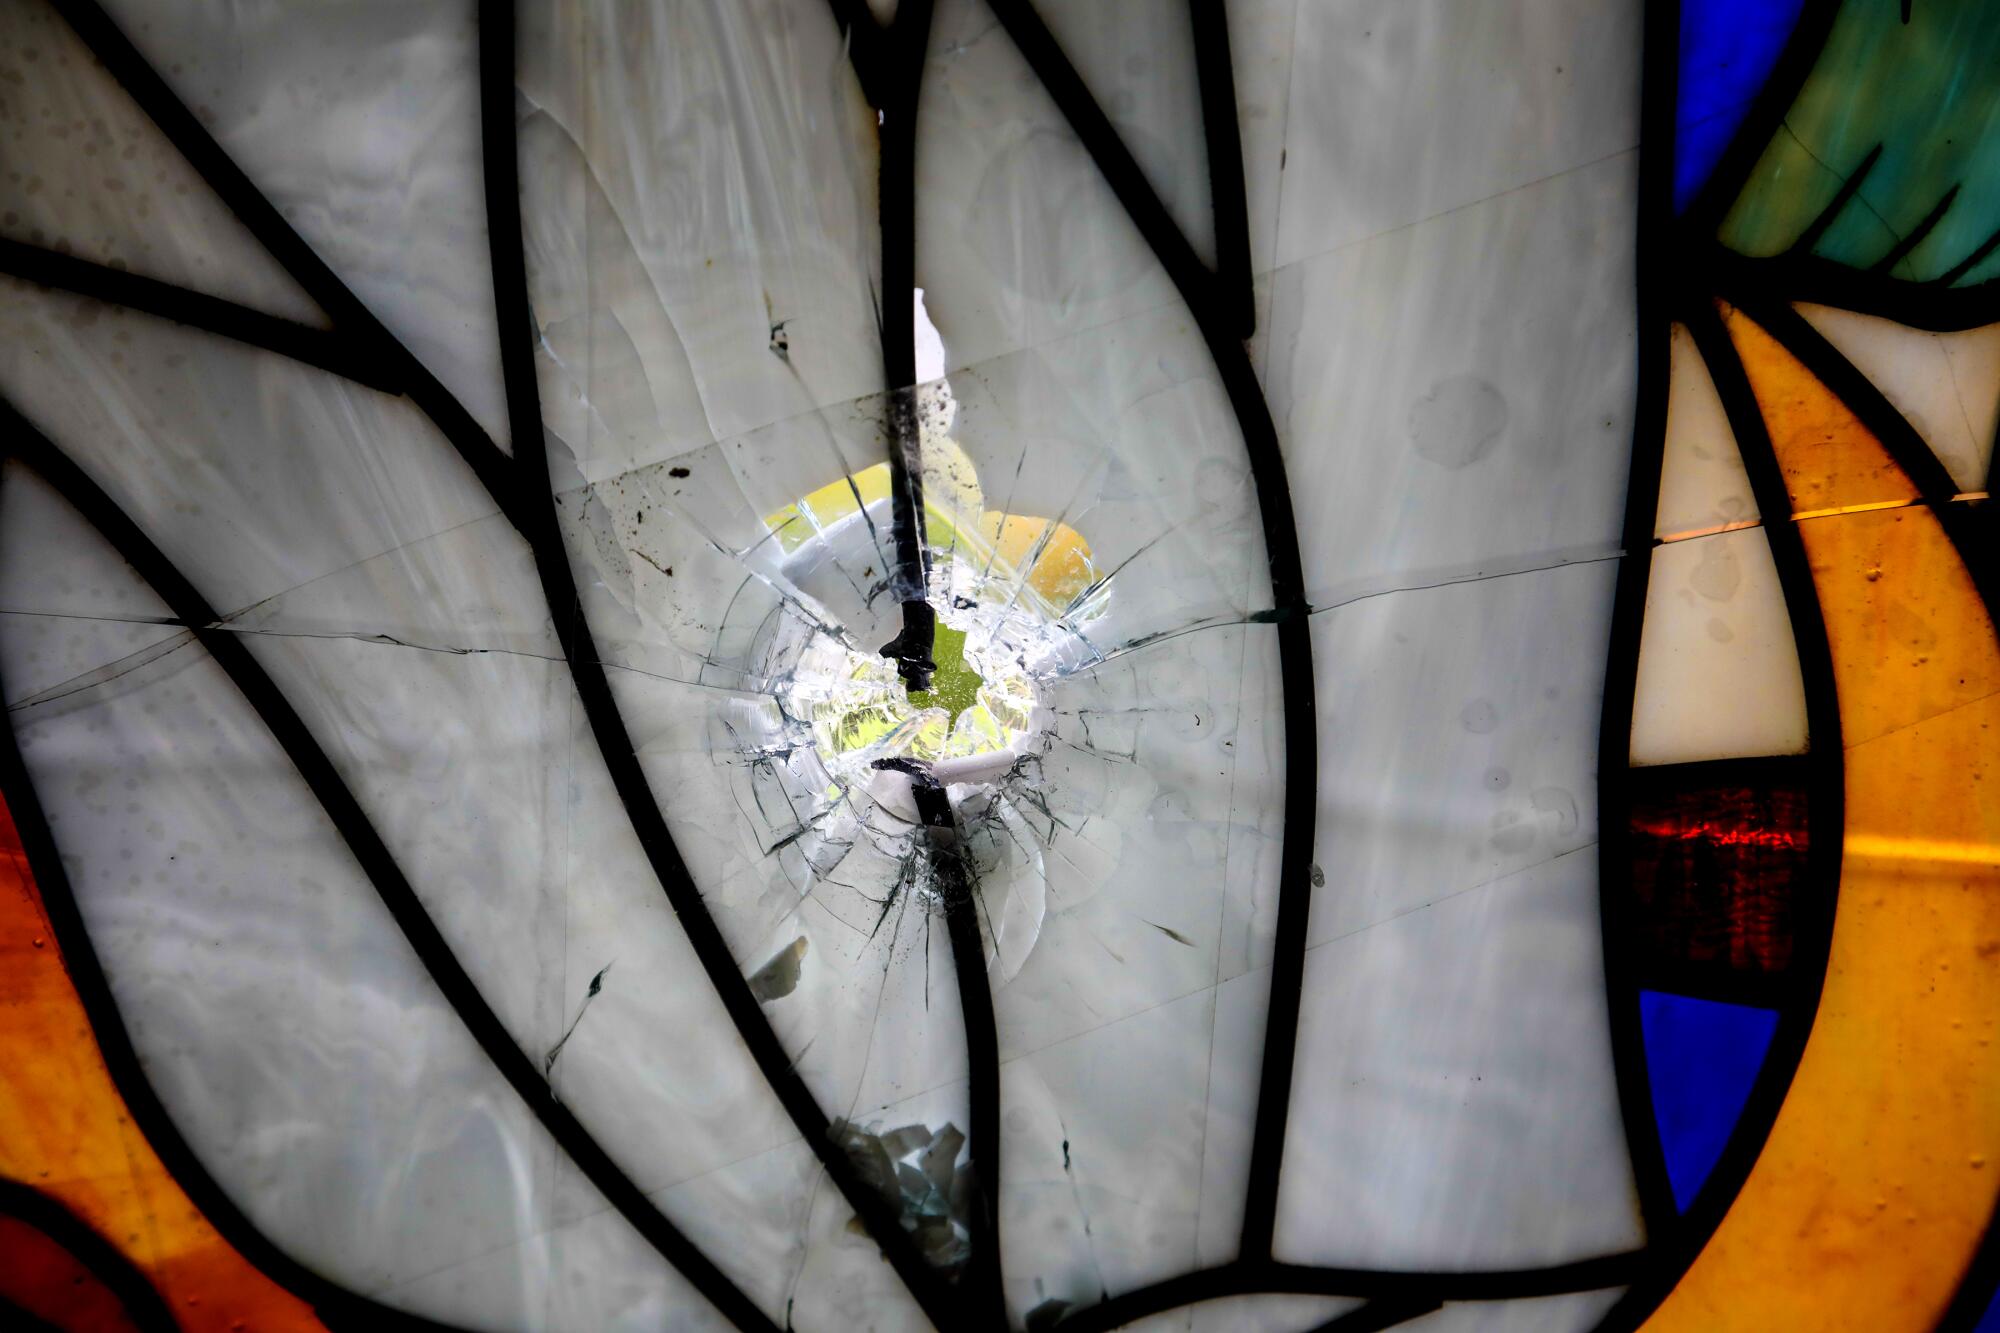 Los agujeros de bala destrozaron los vitrales de la capilla de la Parroquia Jesús de la Divina Misericordia, una iglesia católica de Managua donde se refugiaron los estudiantes en julio de 2018. Los agujeros han sido cubiertos con vidrios nuevos, pero se conservan los signos de los daños.